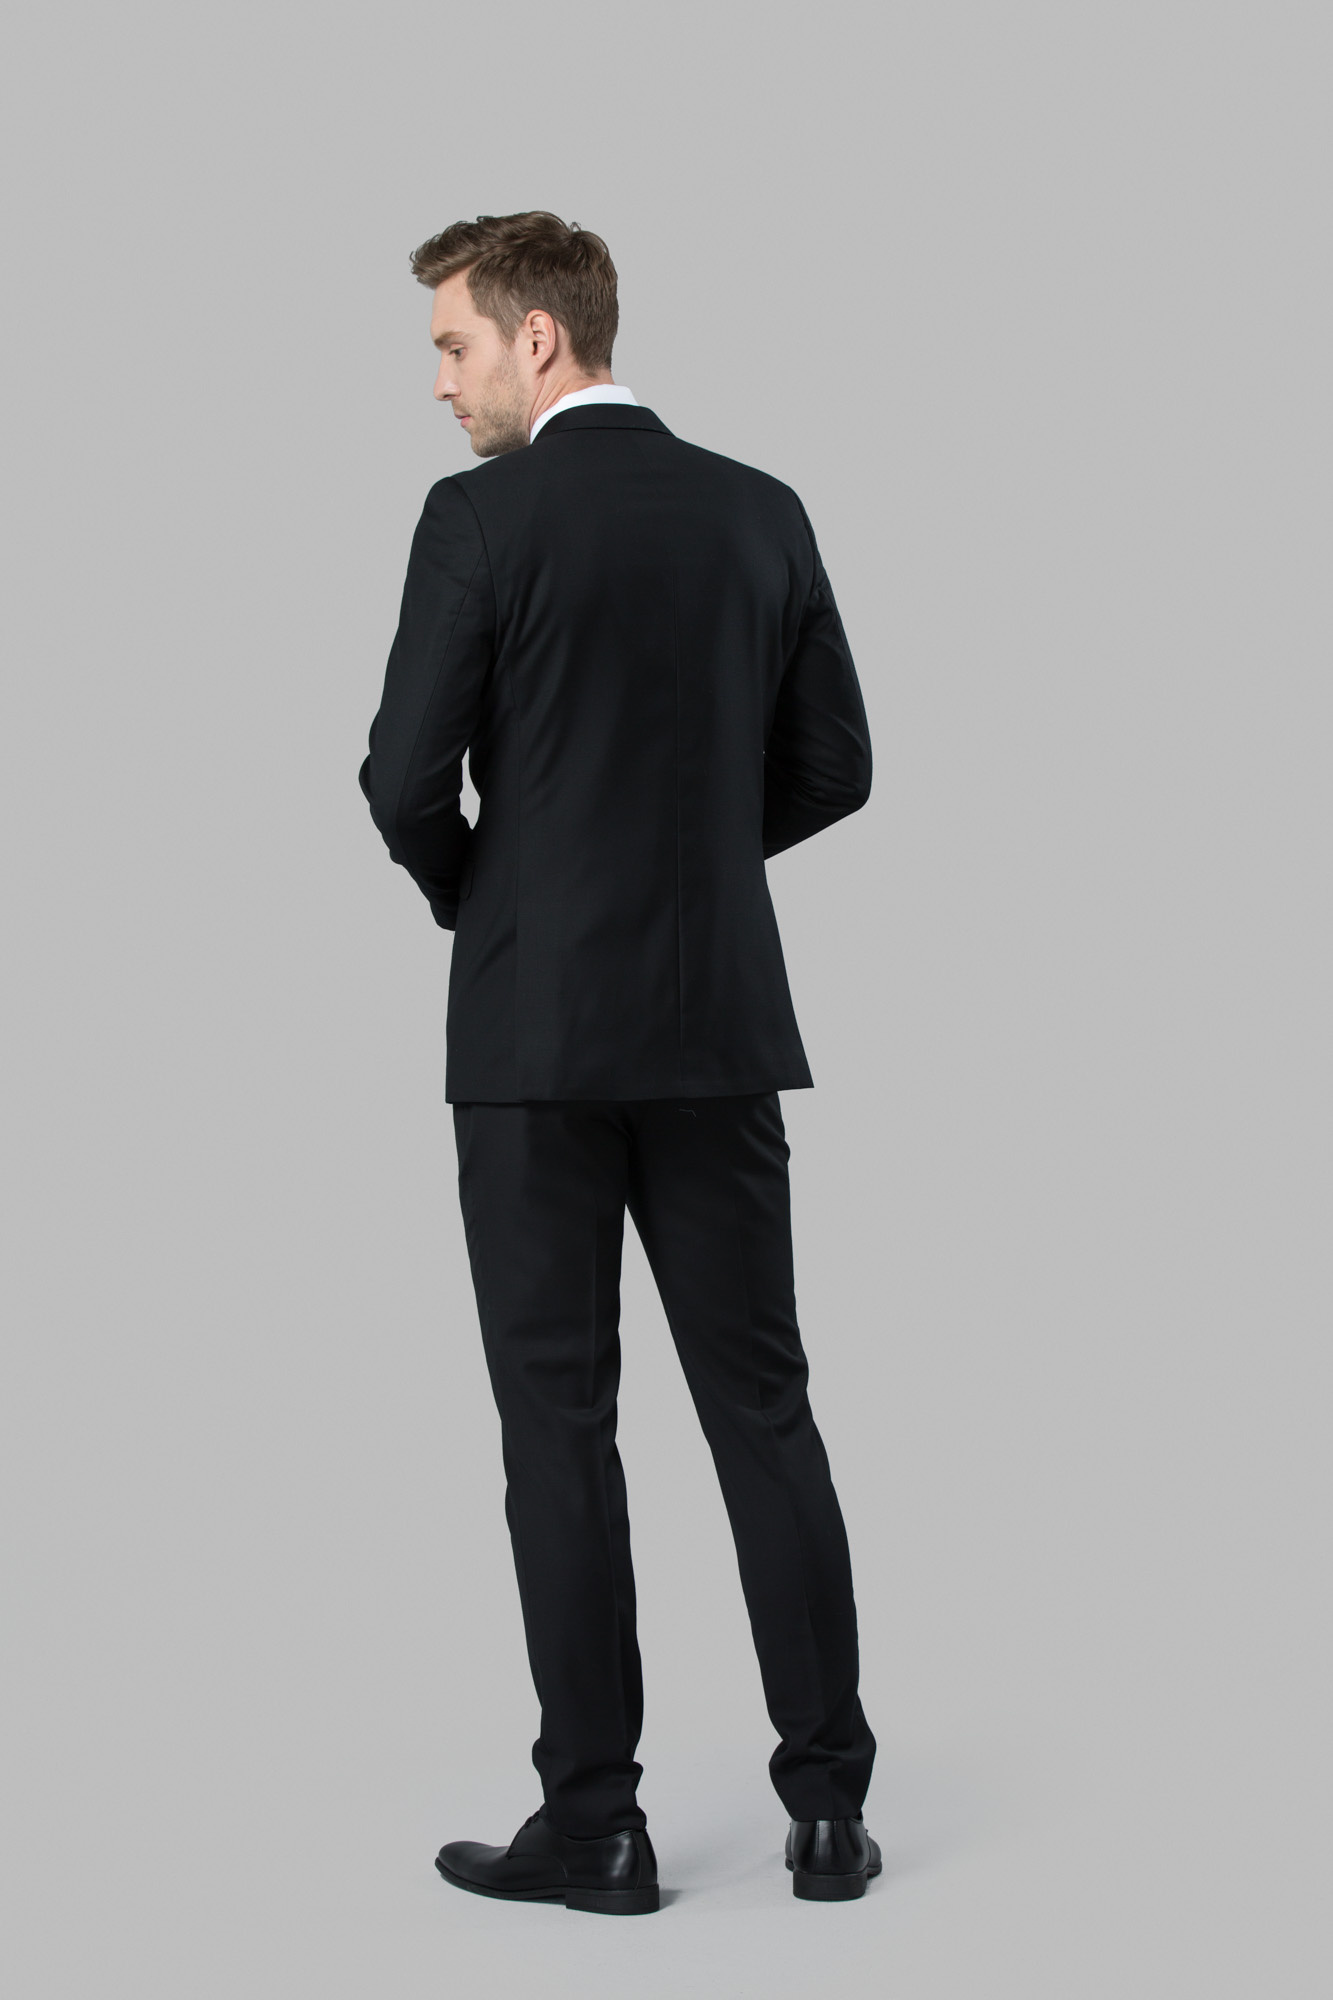 Classic Black Suit | Menguin | Black Suit Rental